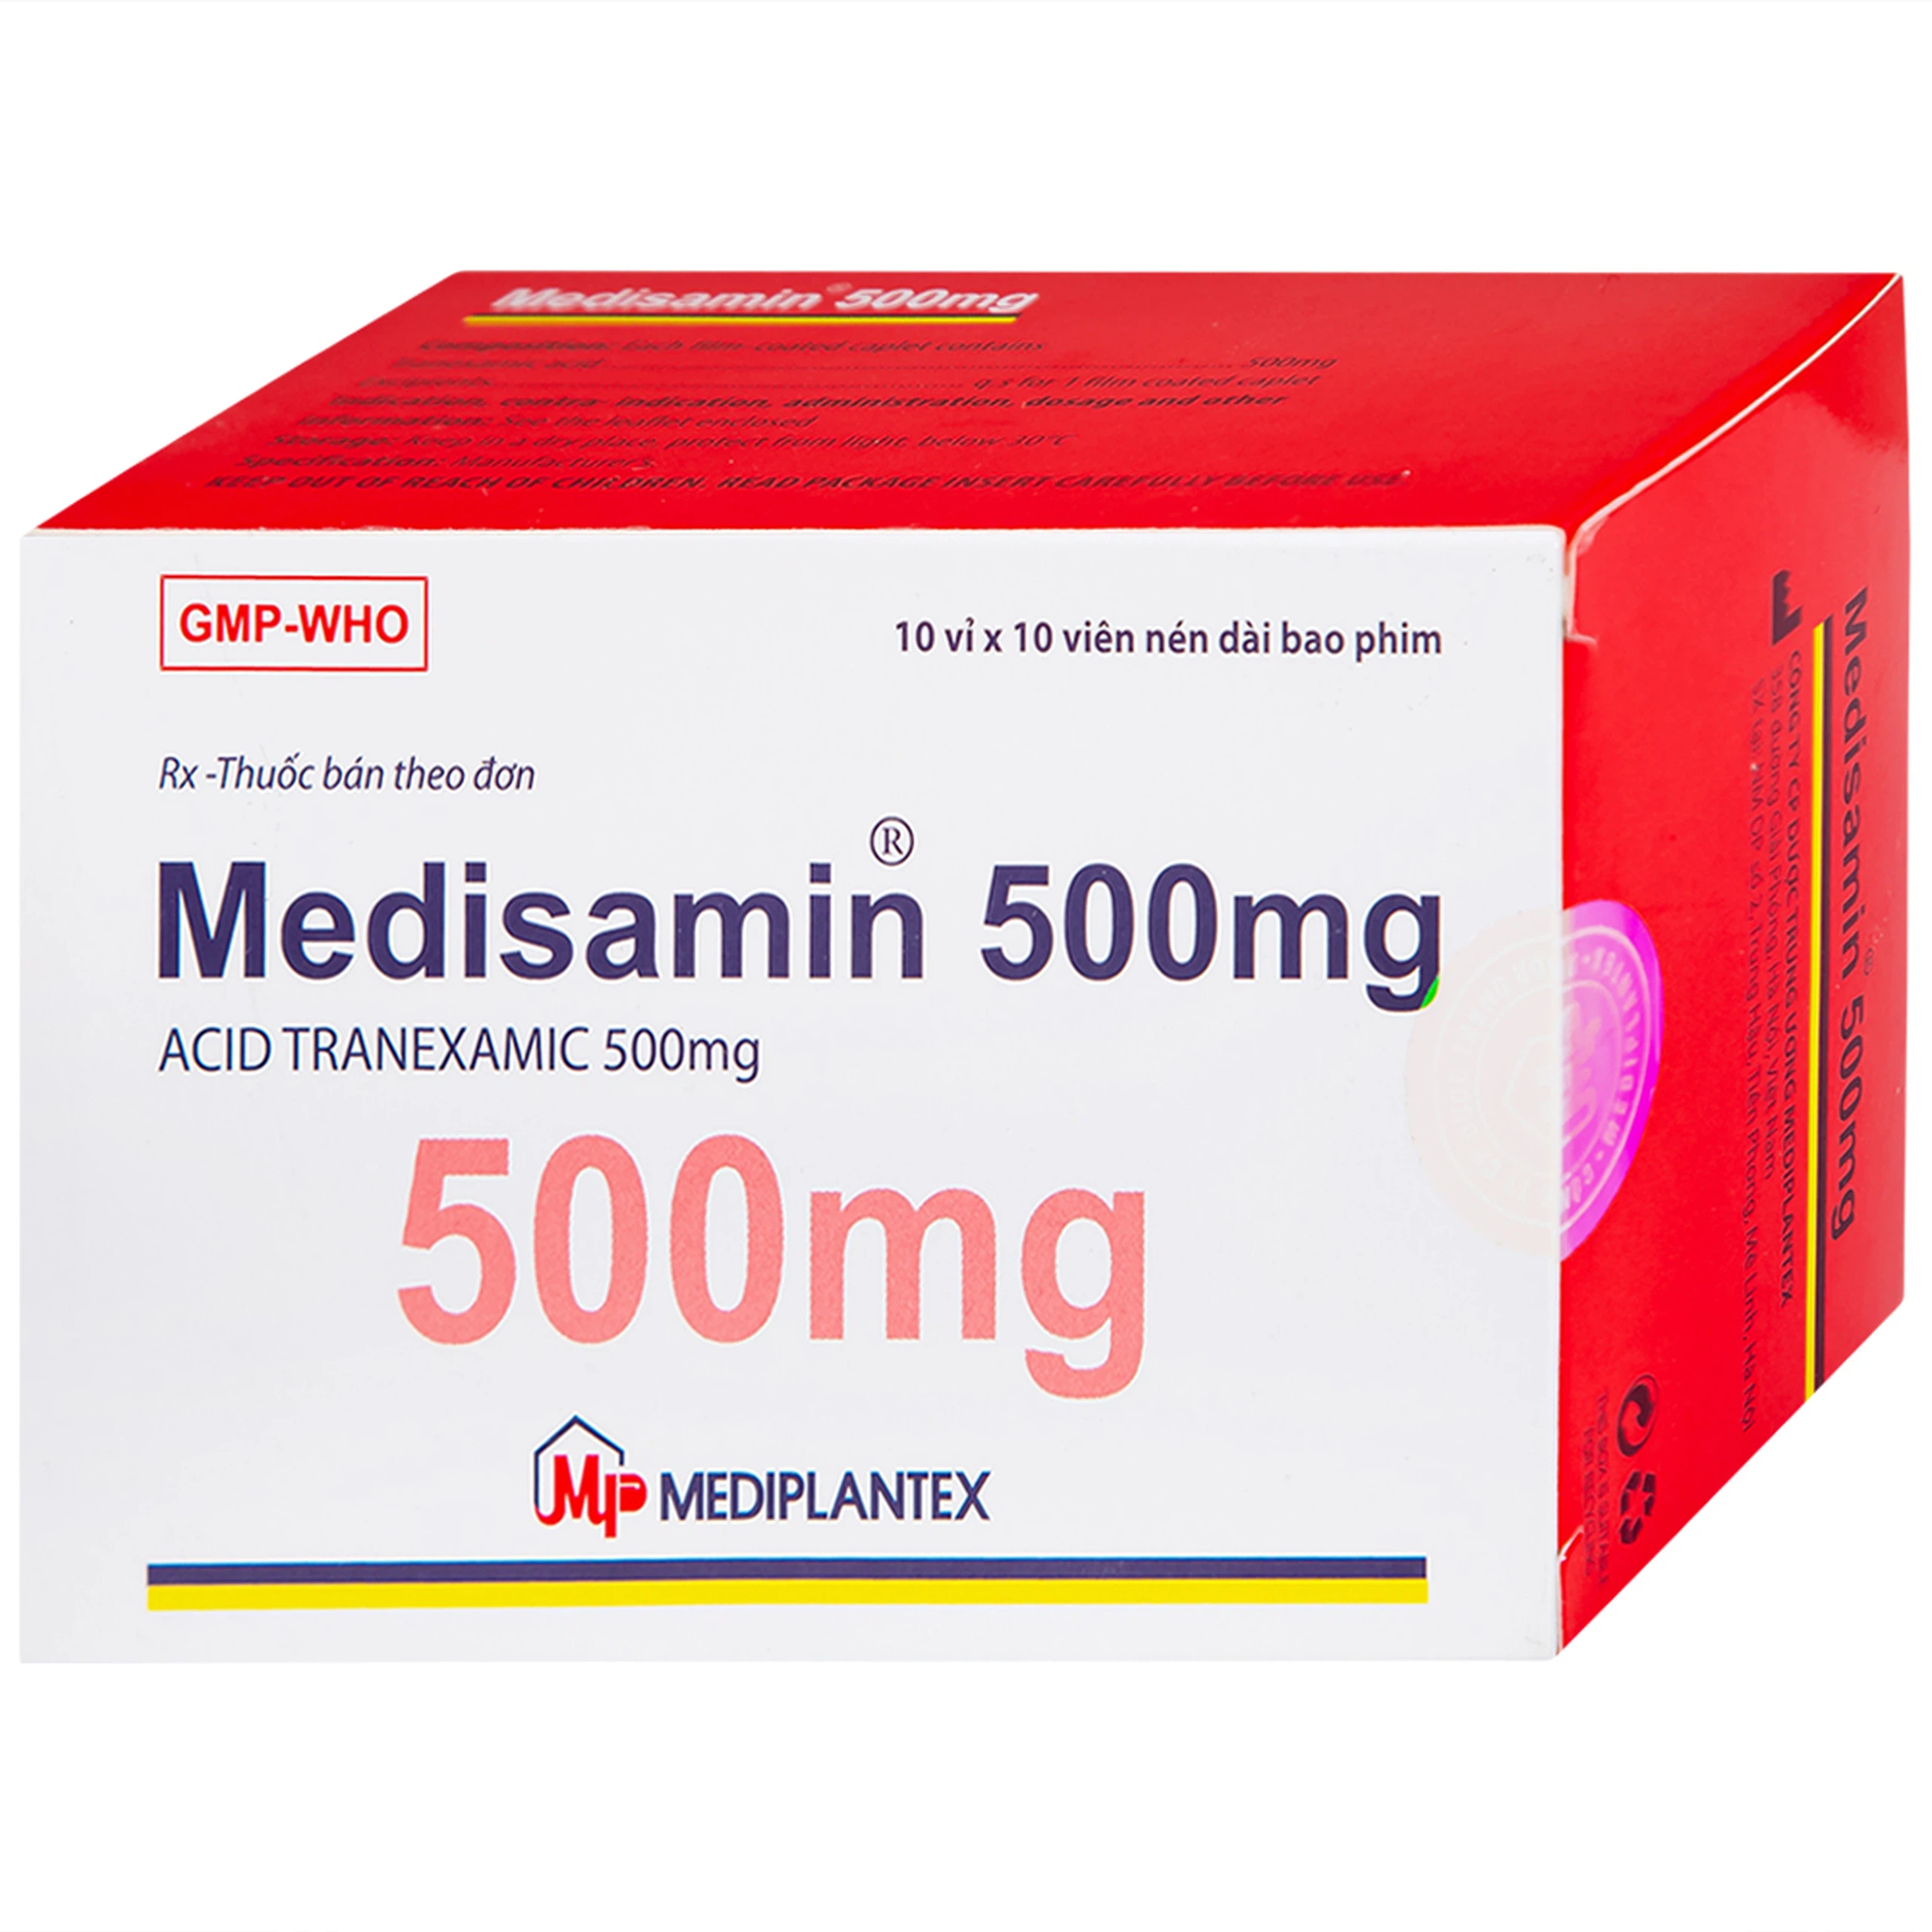 Thuốc Medisamin 500mg Mediplantex điều trị chảy máu ở bệnh ưa chảy máu, rong kinh (10 vỉ x 10 viên) 